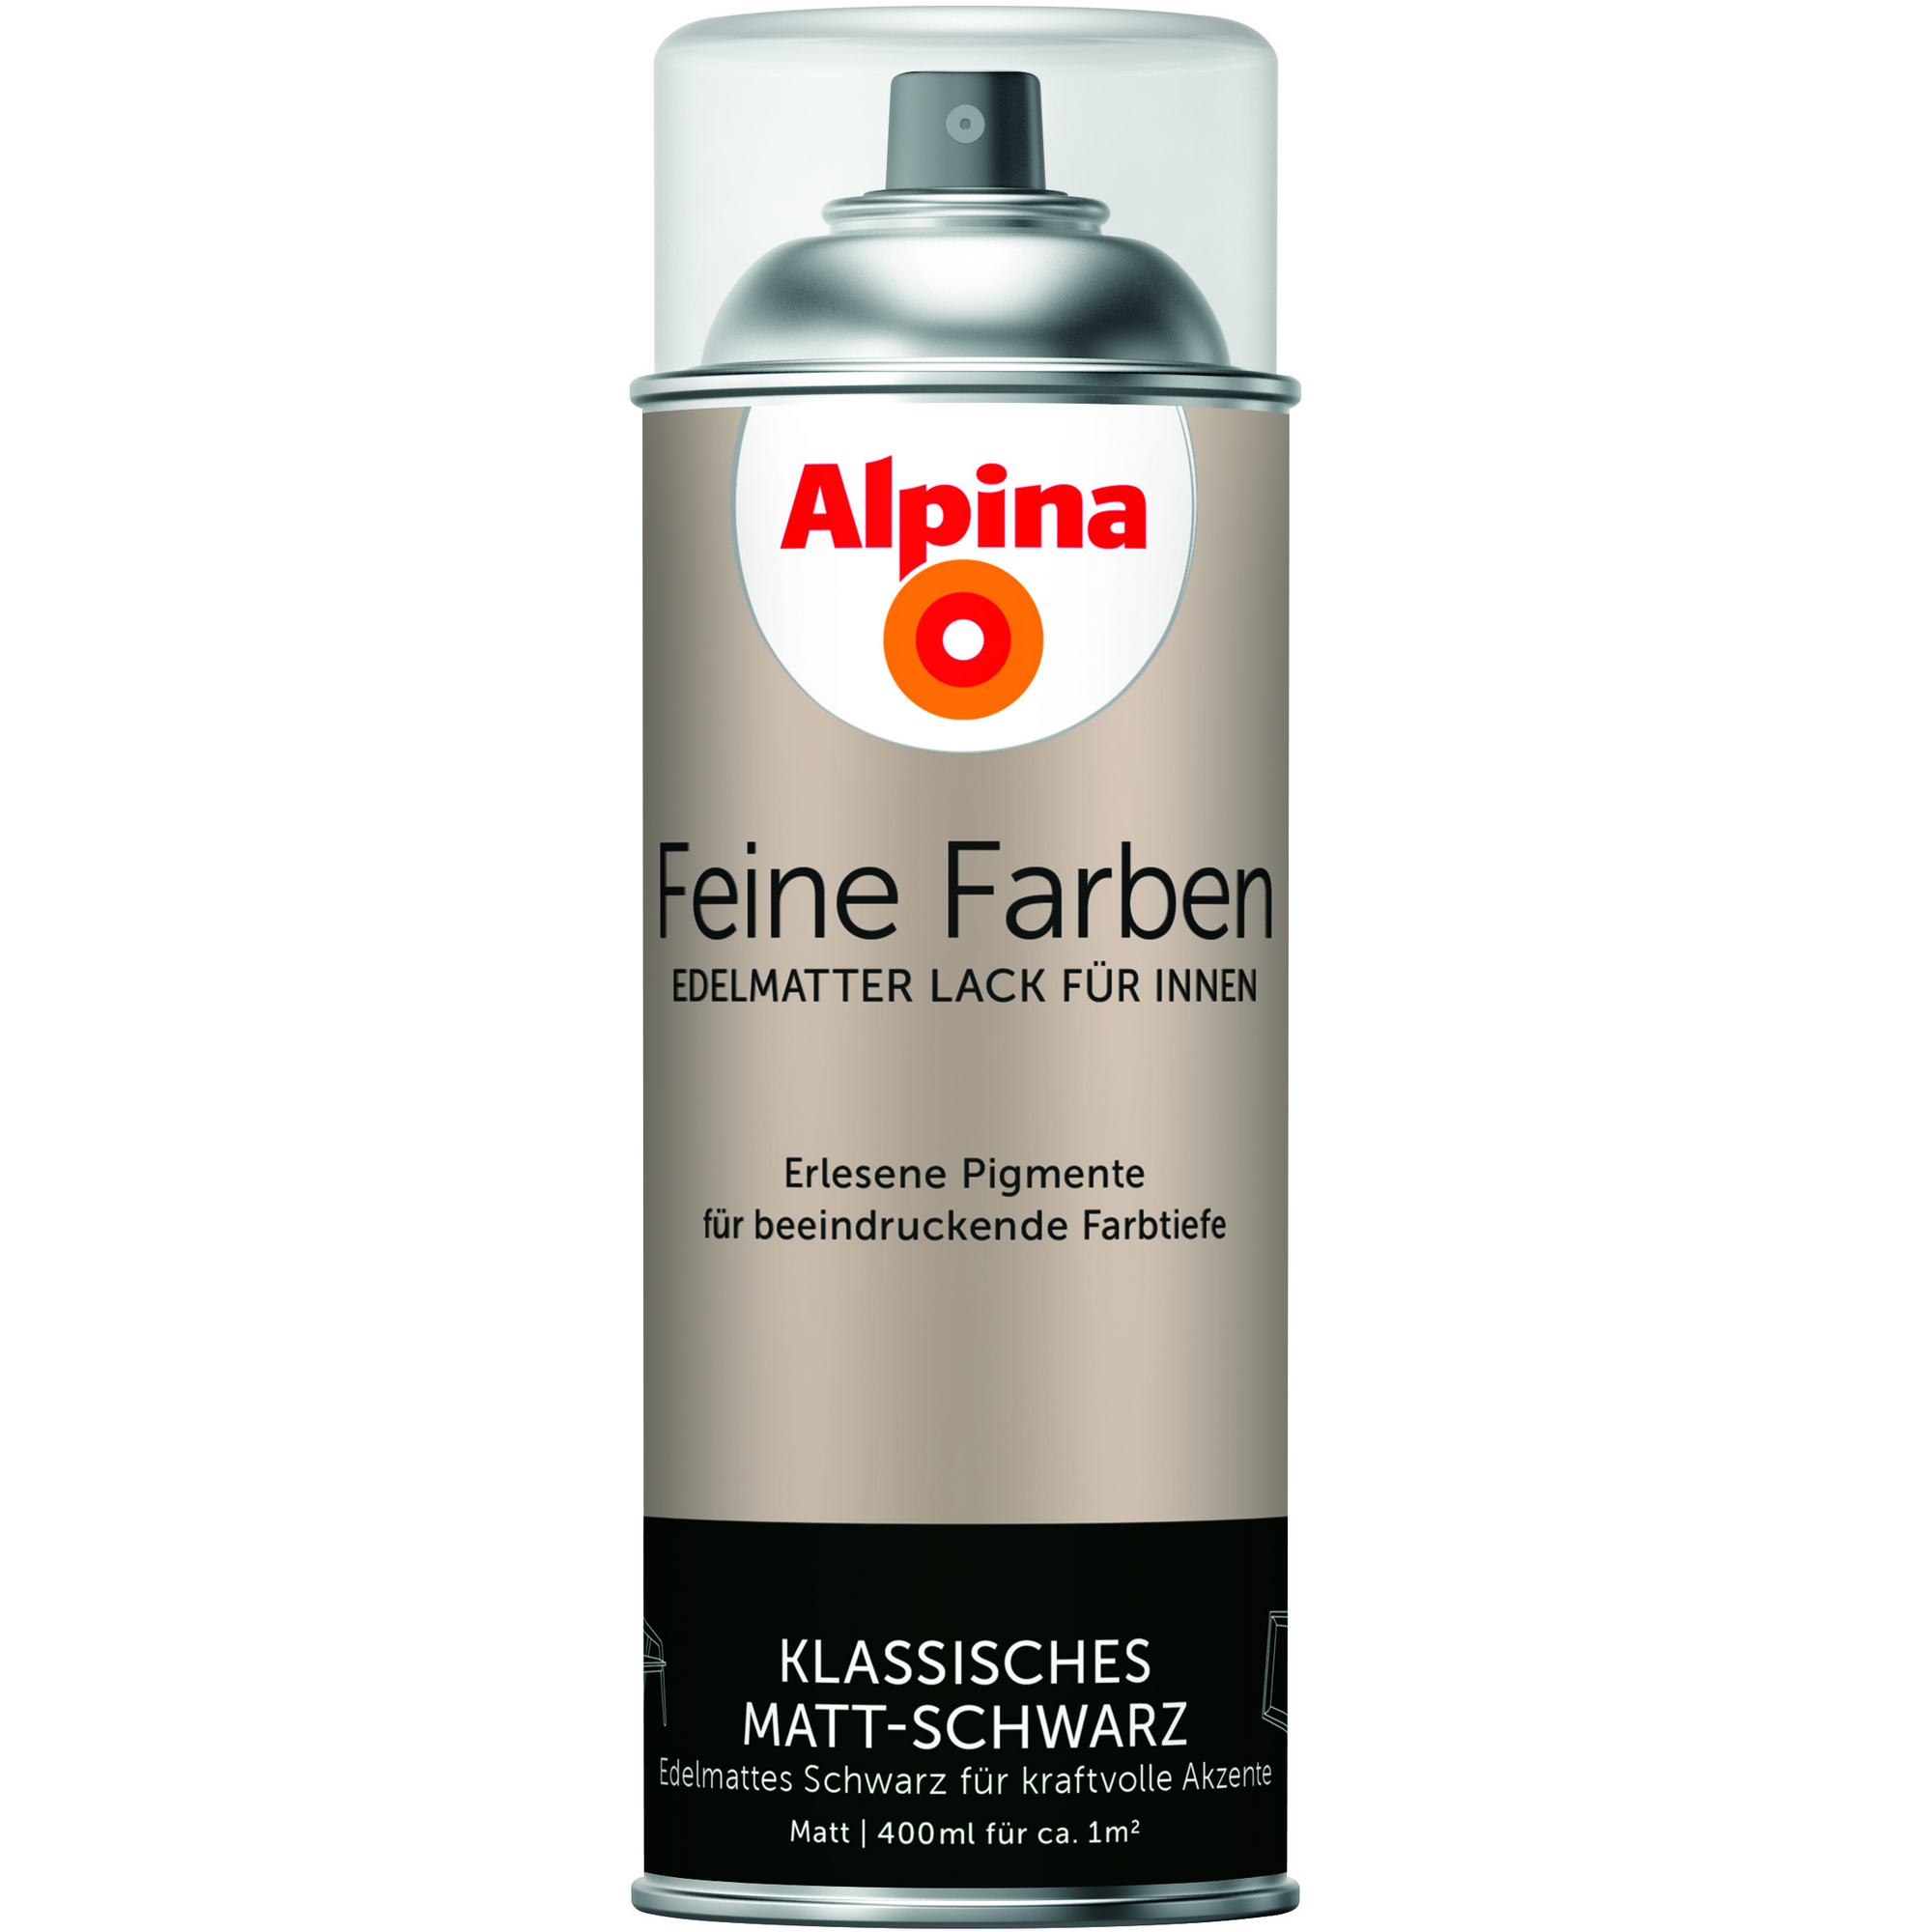 Feine Farben 'Klassisches Matt-Schwarz' schwarz matt 400 ml + product picture